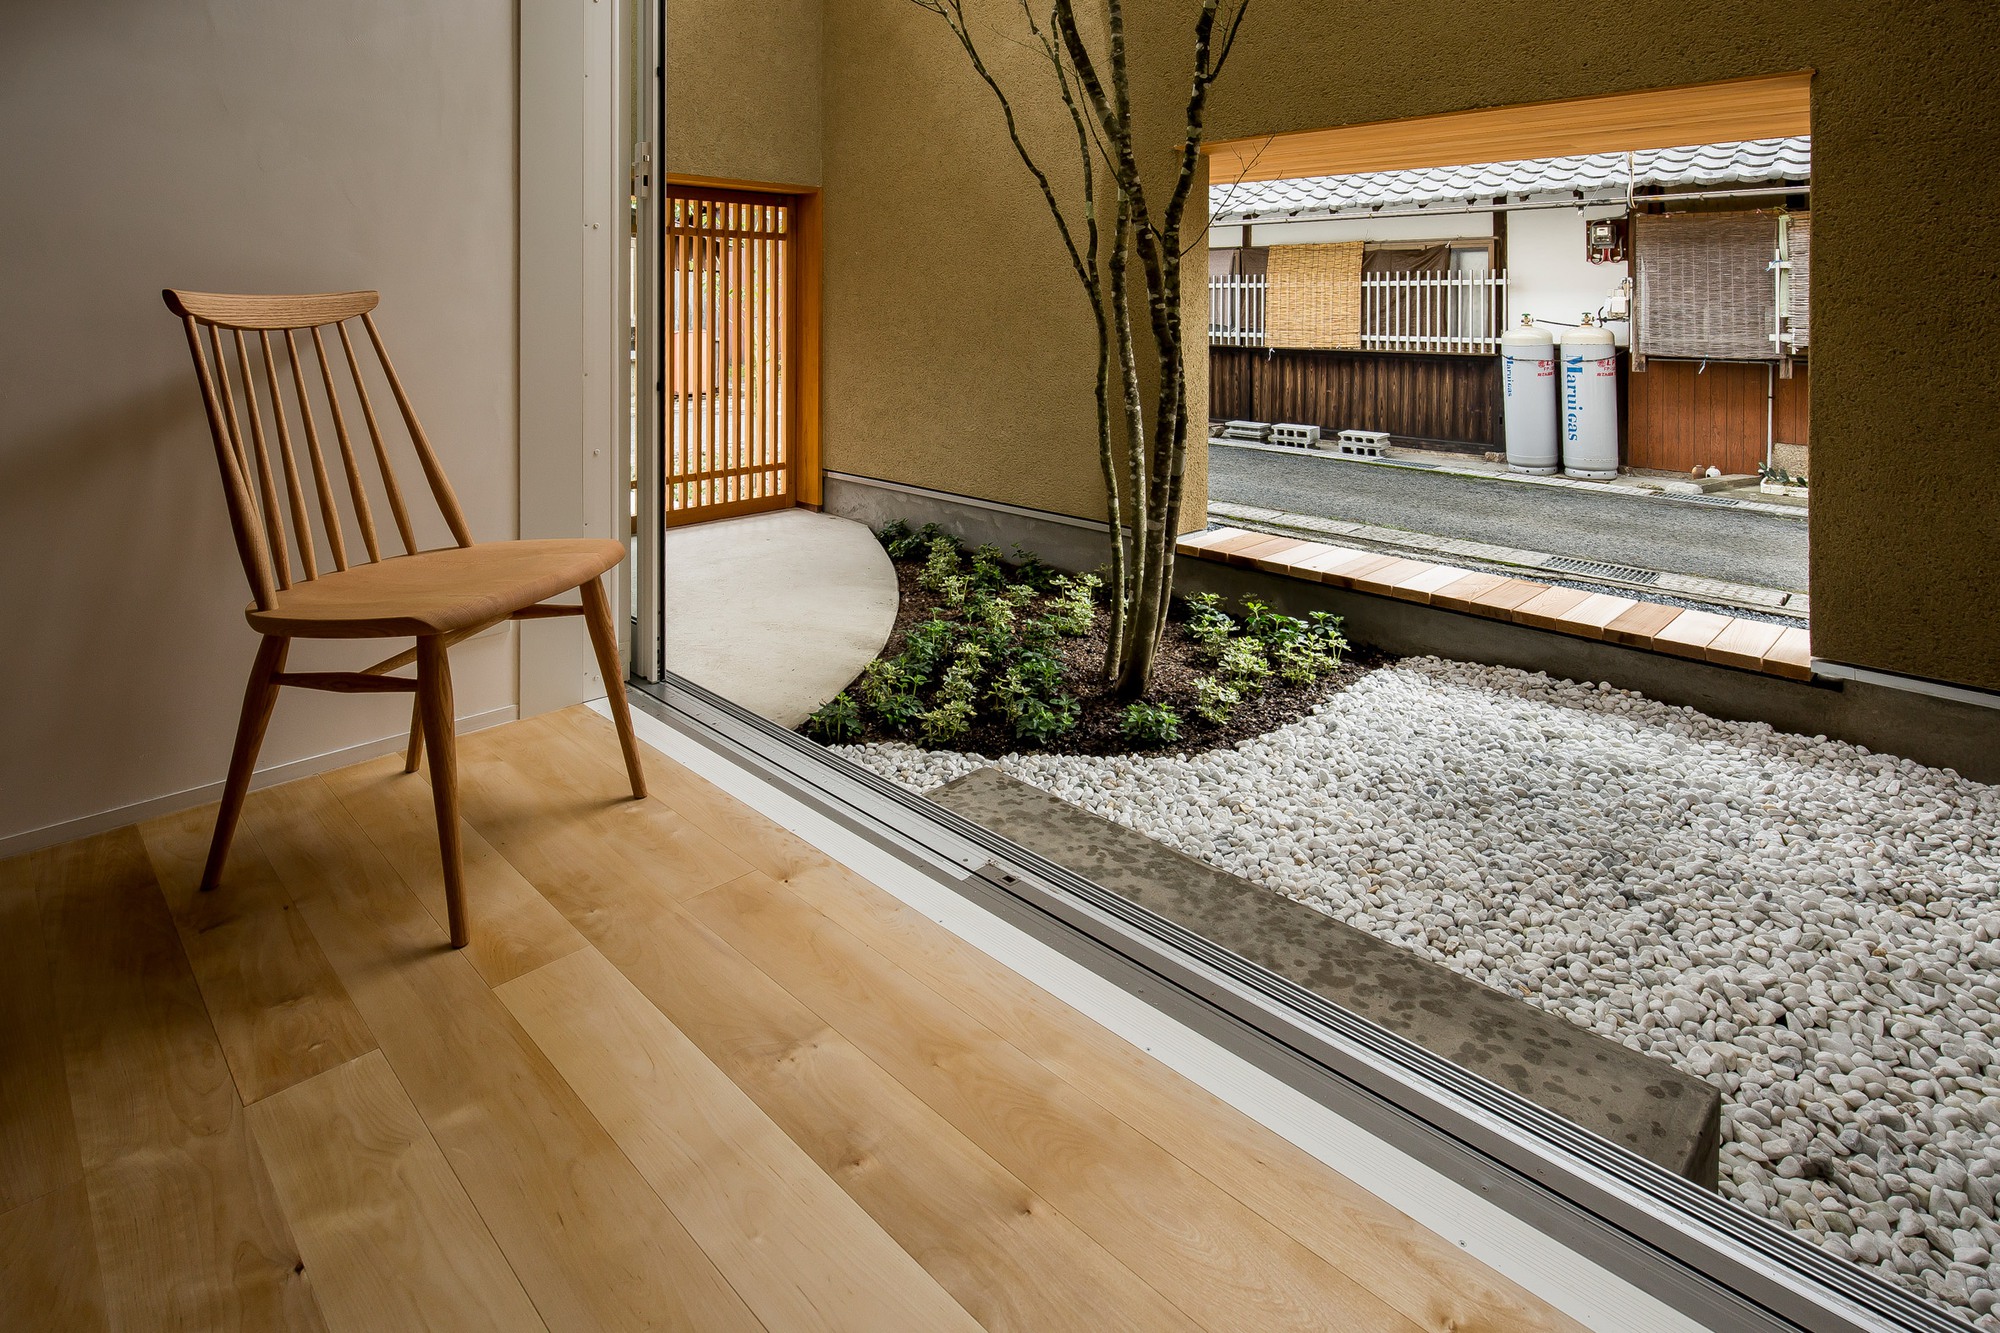 Ngôi nhà với khoảng sân vườn thiết kế đẹp như tranh vẽ ở Nhật - Ảnh 8.